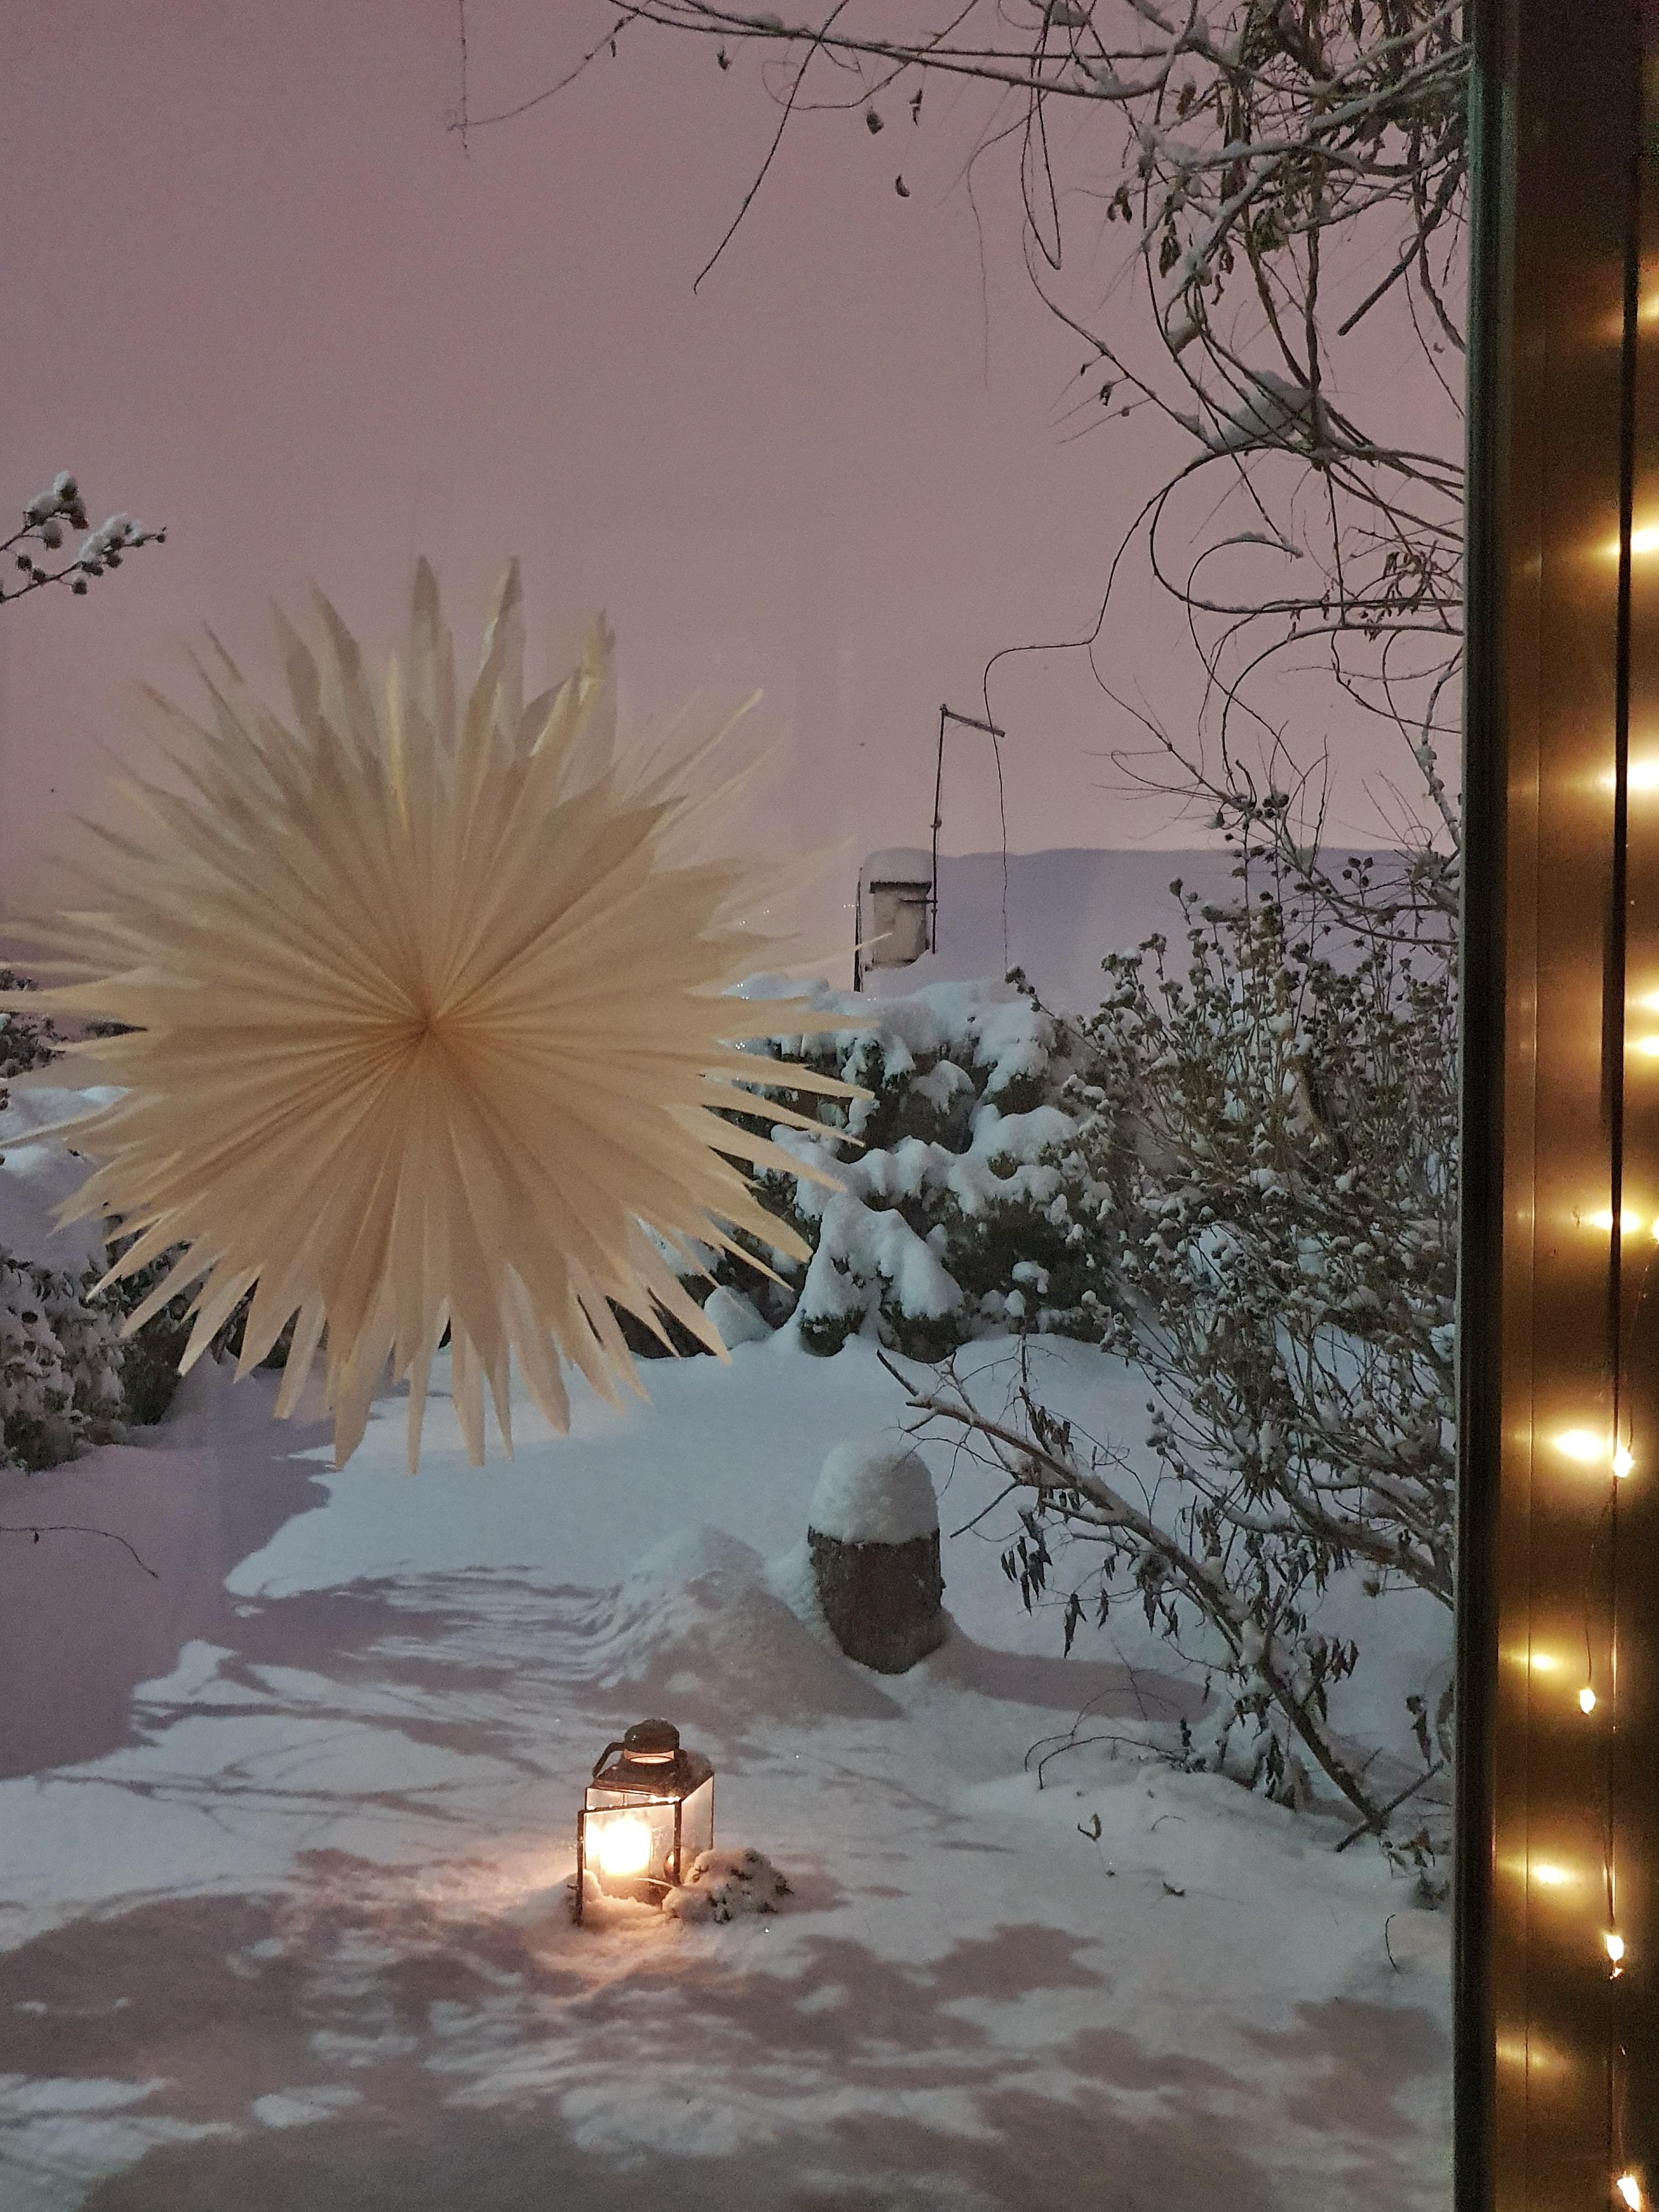 #weihnachten #christmas #fensterdeko #winter #papierstern #interior #couchliebt